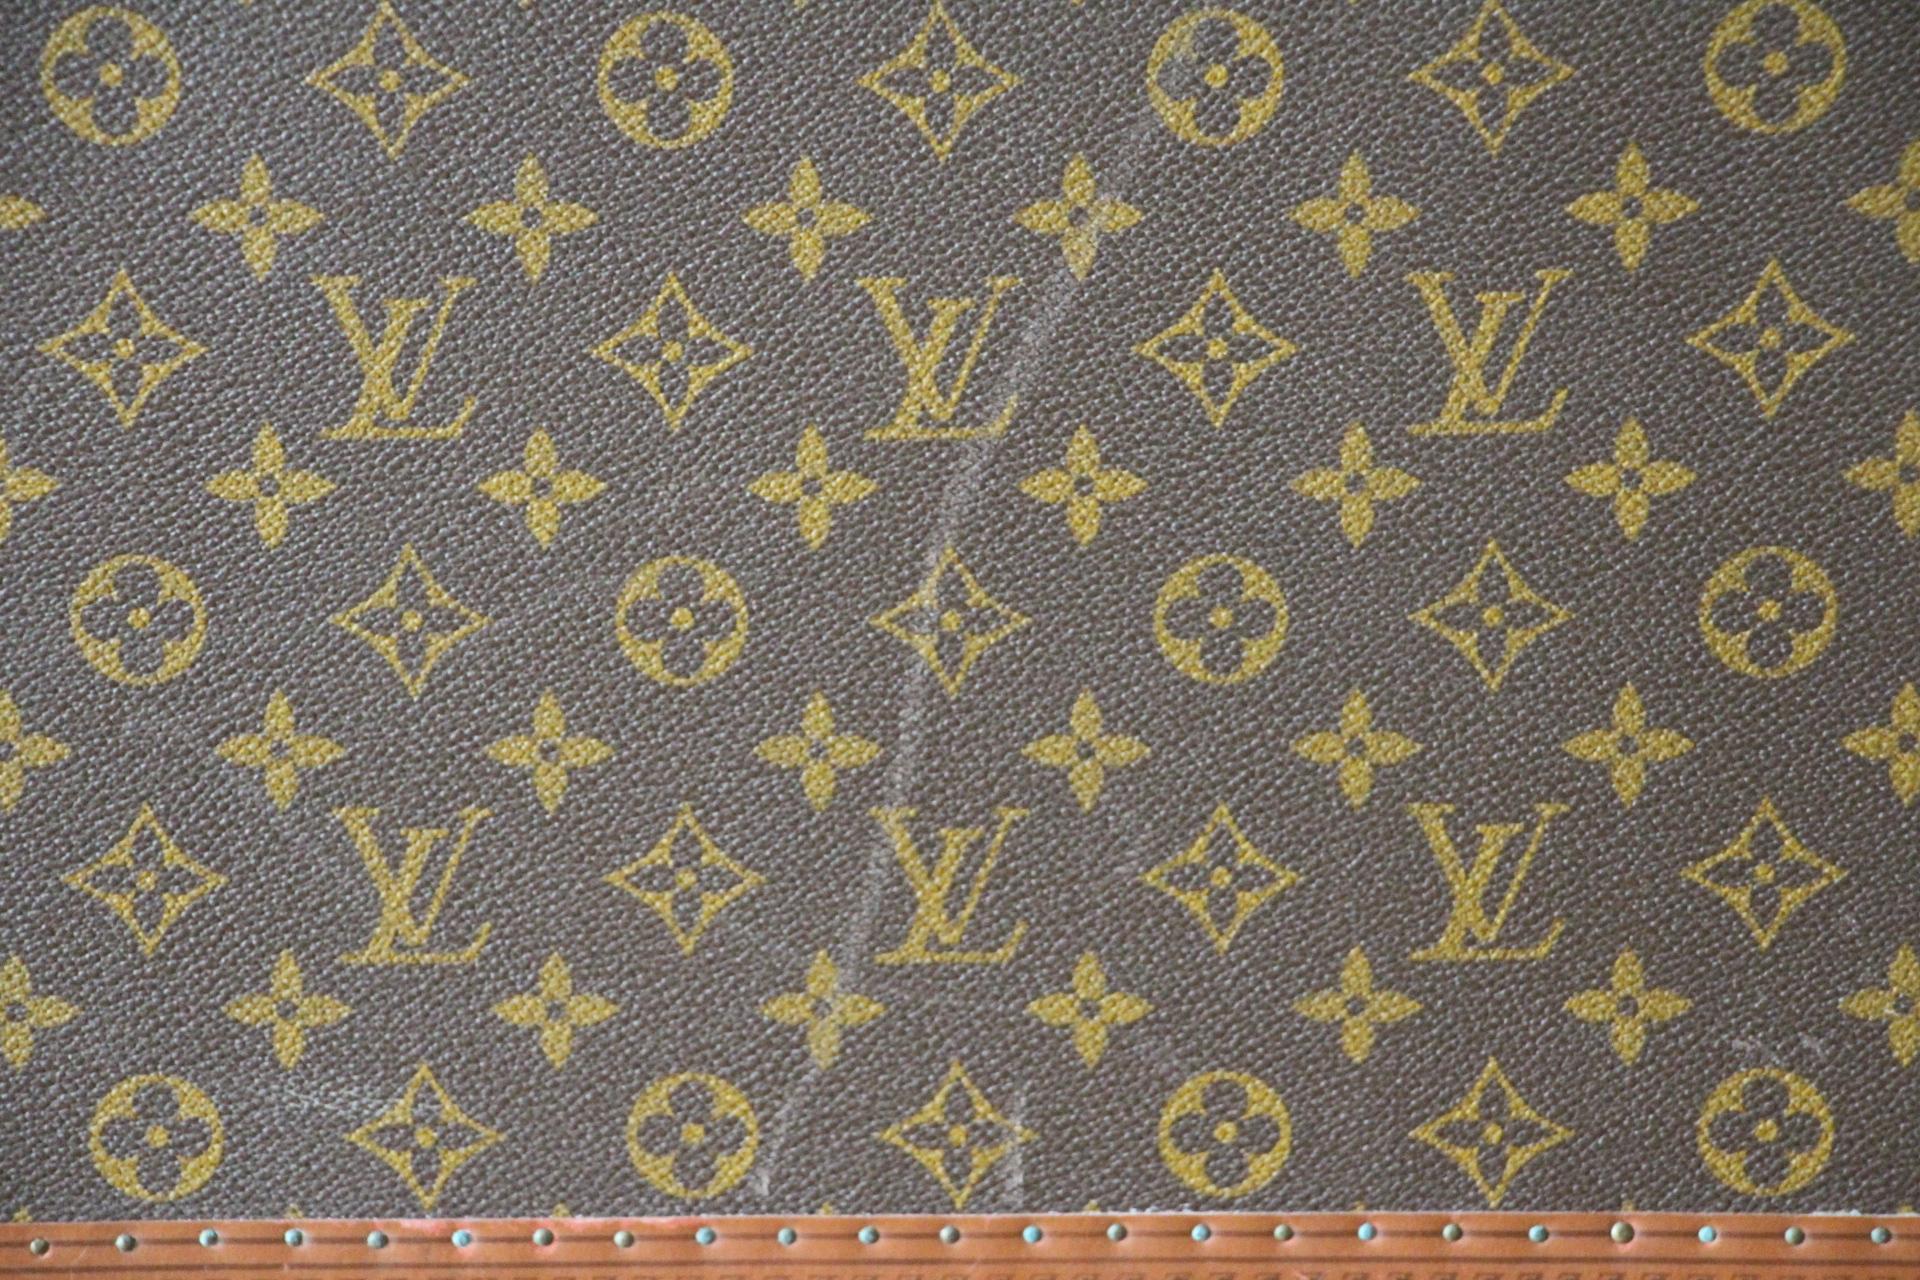  Louis Vuitton Suitcase 70 cm,  Louis Vuitton Trunk For Sale 12